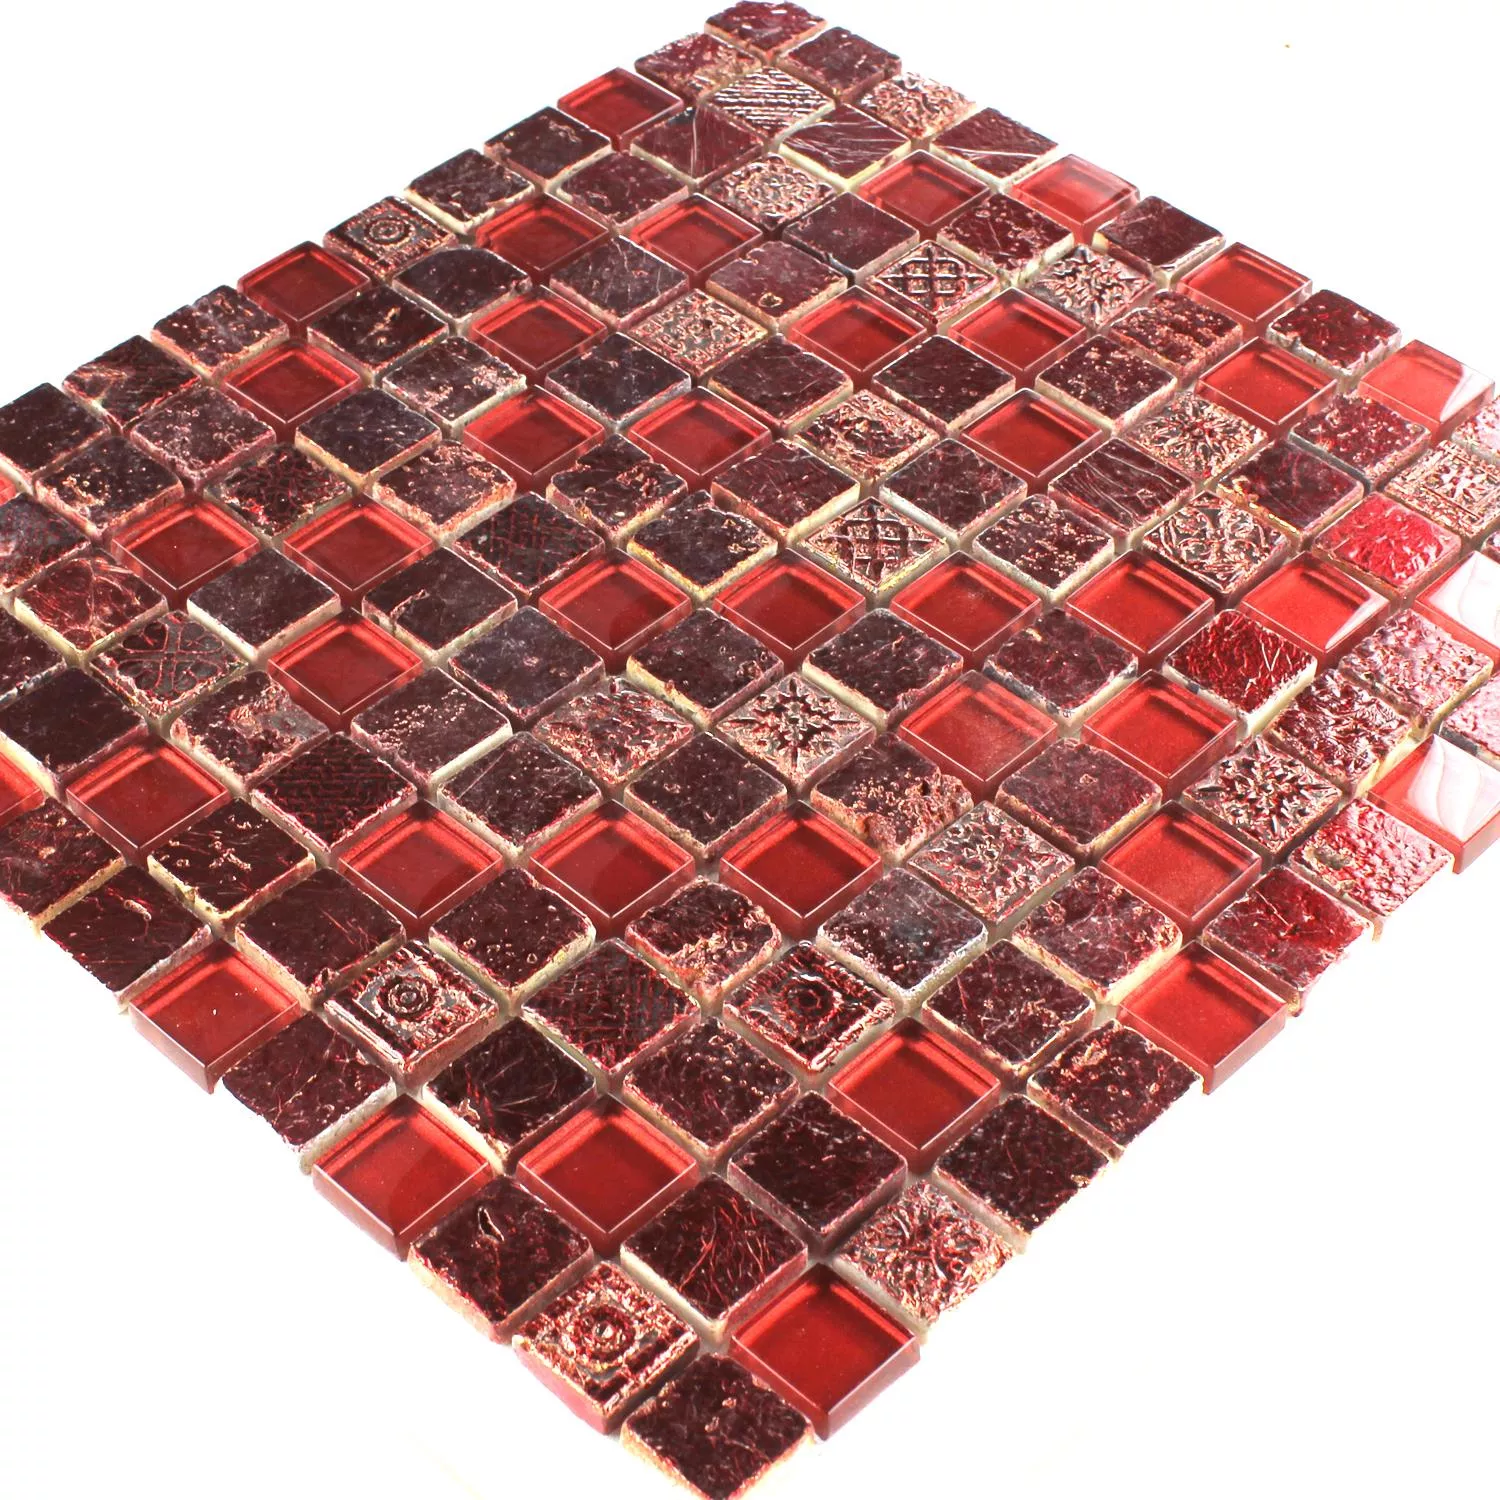 Mosaico Vetro Calcare Marmo Lava Rosso Duo